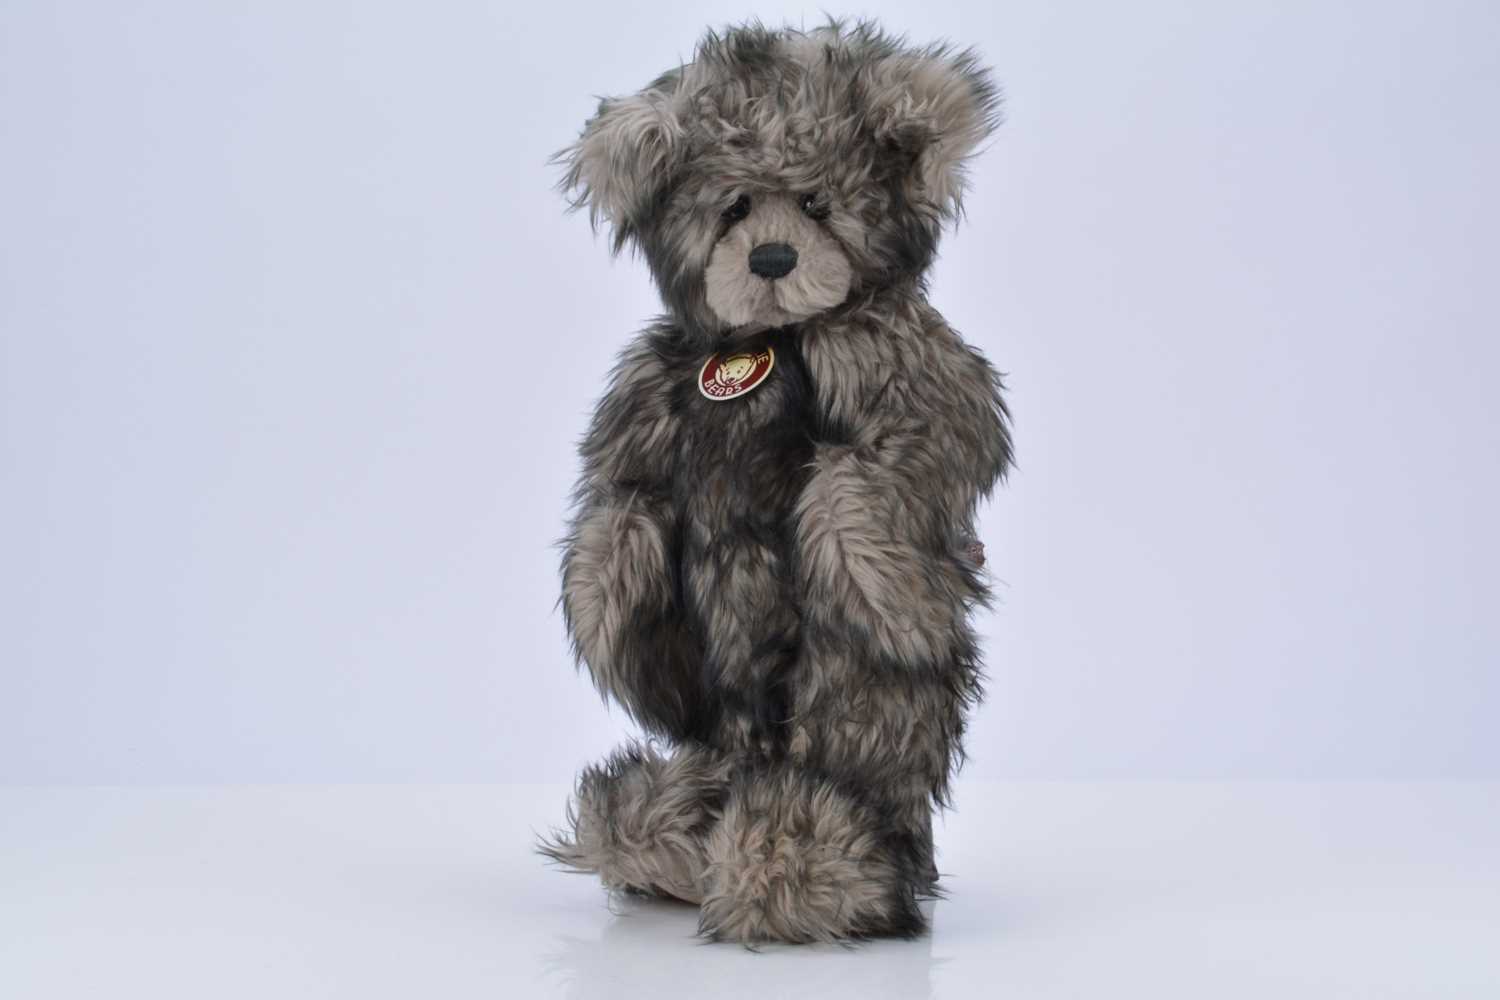 Lot 21 - Charlie Bears Willis teddy bear